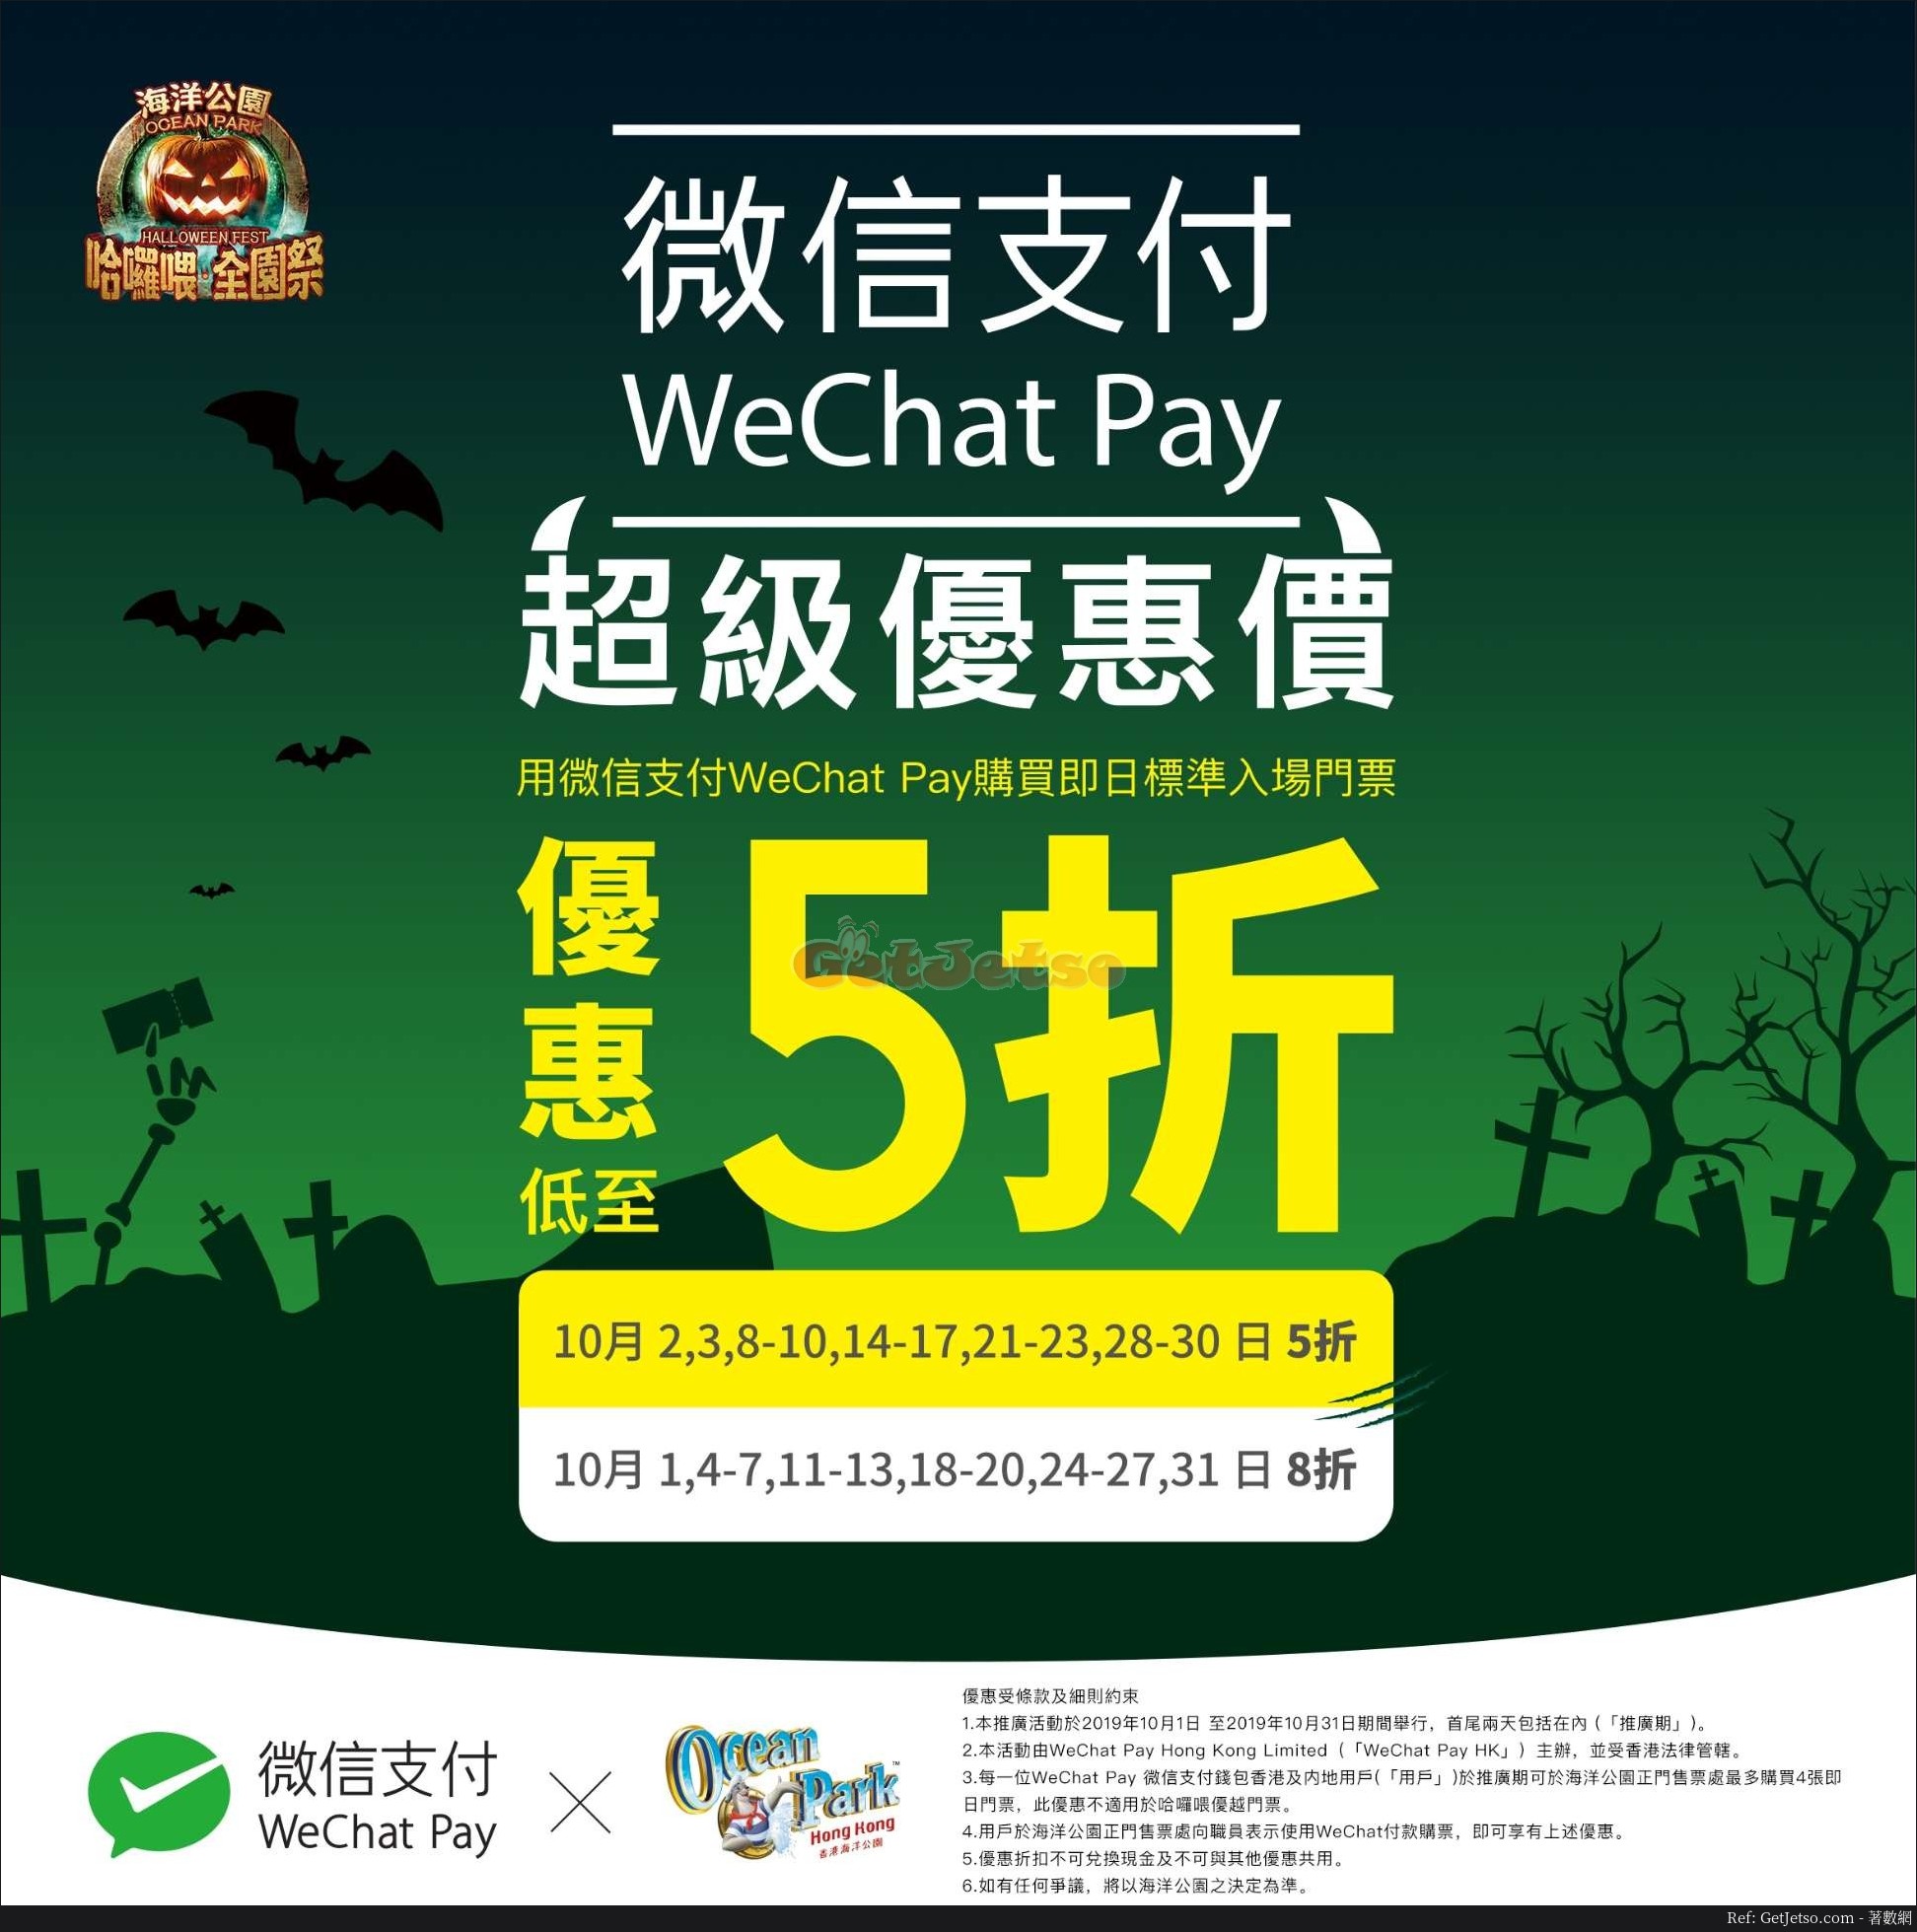 海洋公園哈囉喂全園祭低至5折優惠@WeChat Pay HK(19年10月1-31日)圖片1